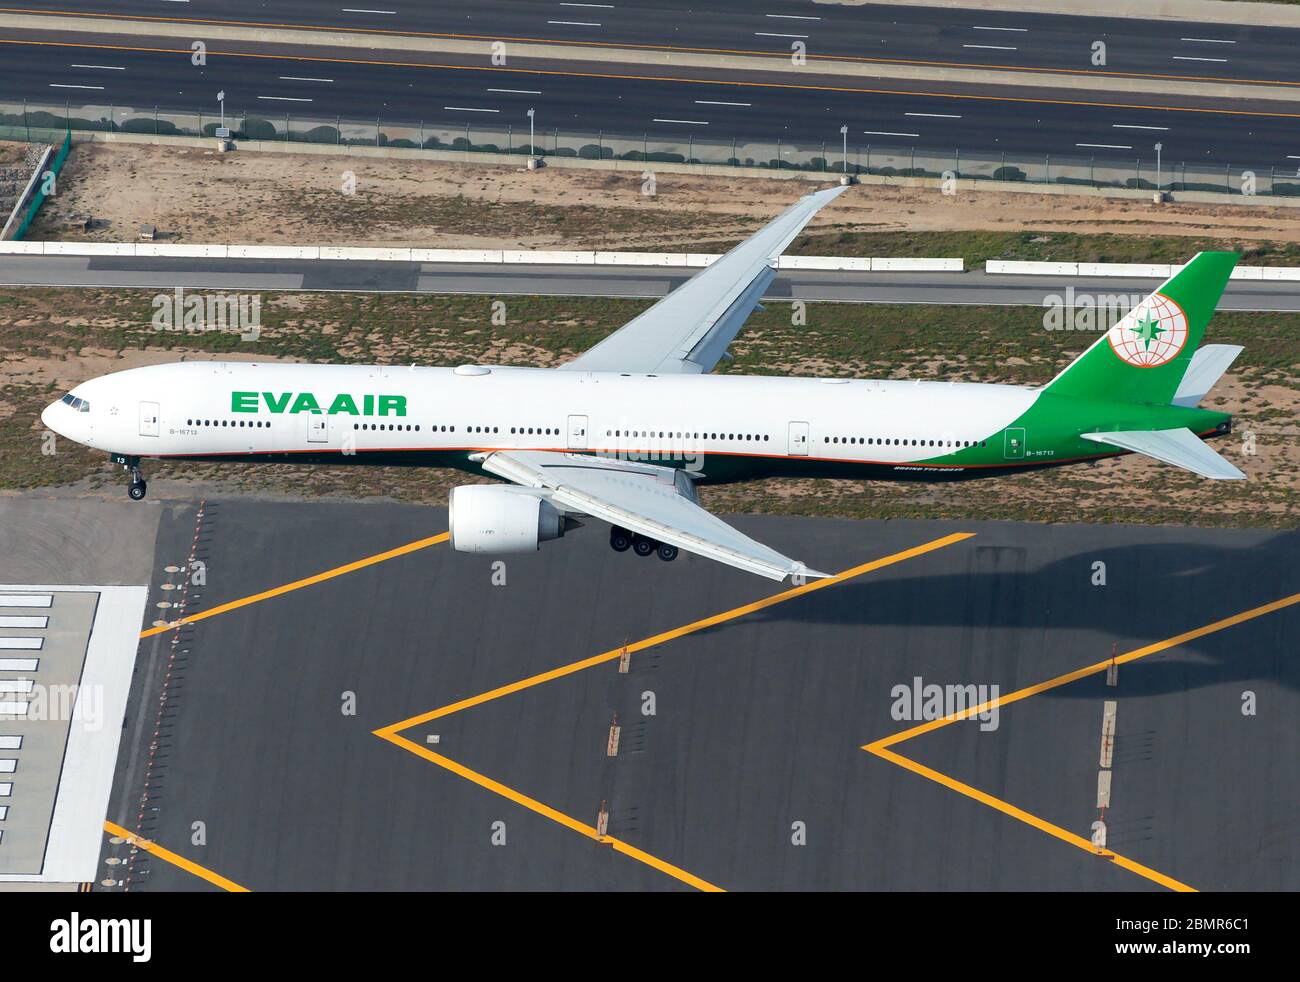 Eva Air Boeing 777 auf endgültige Annäherung an Los Angeles International Airport Luftbild. Flugzeuge registriert als B-16713. Flugzeug über Landebahn Chevrons. Stockfoto